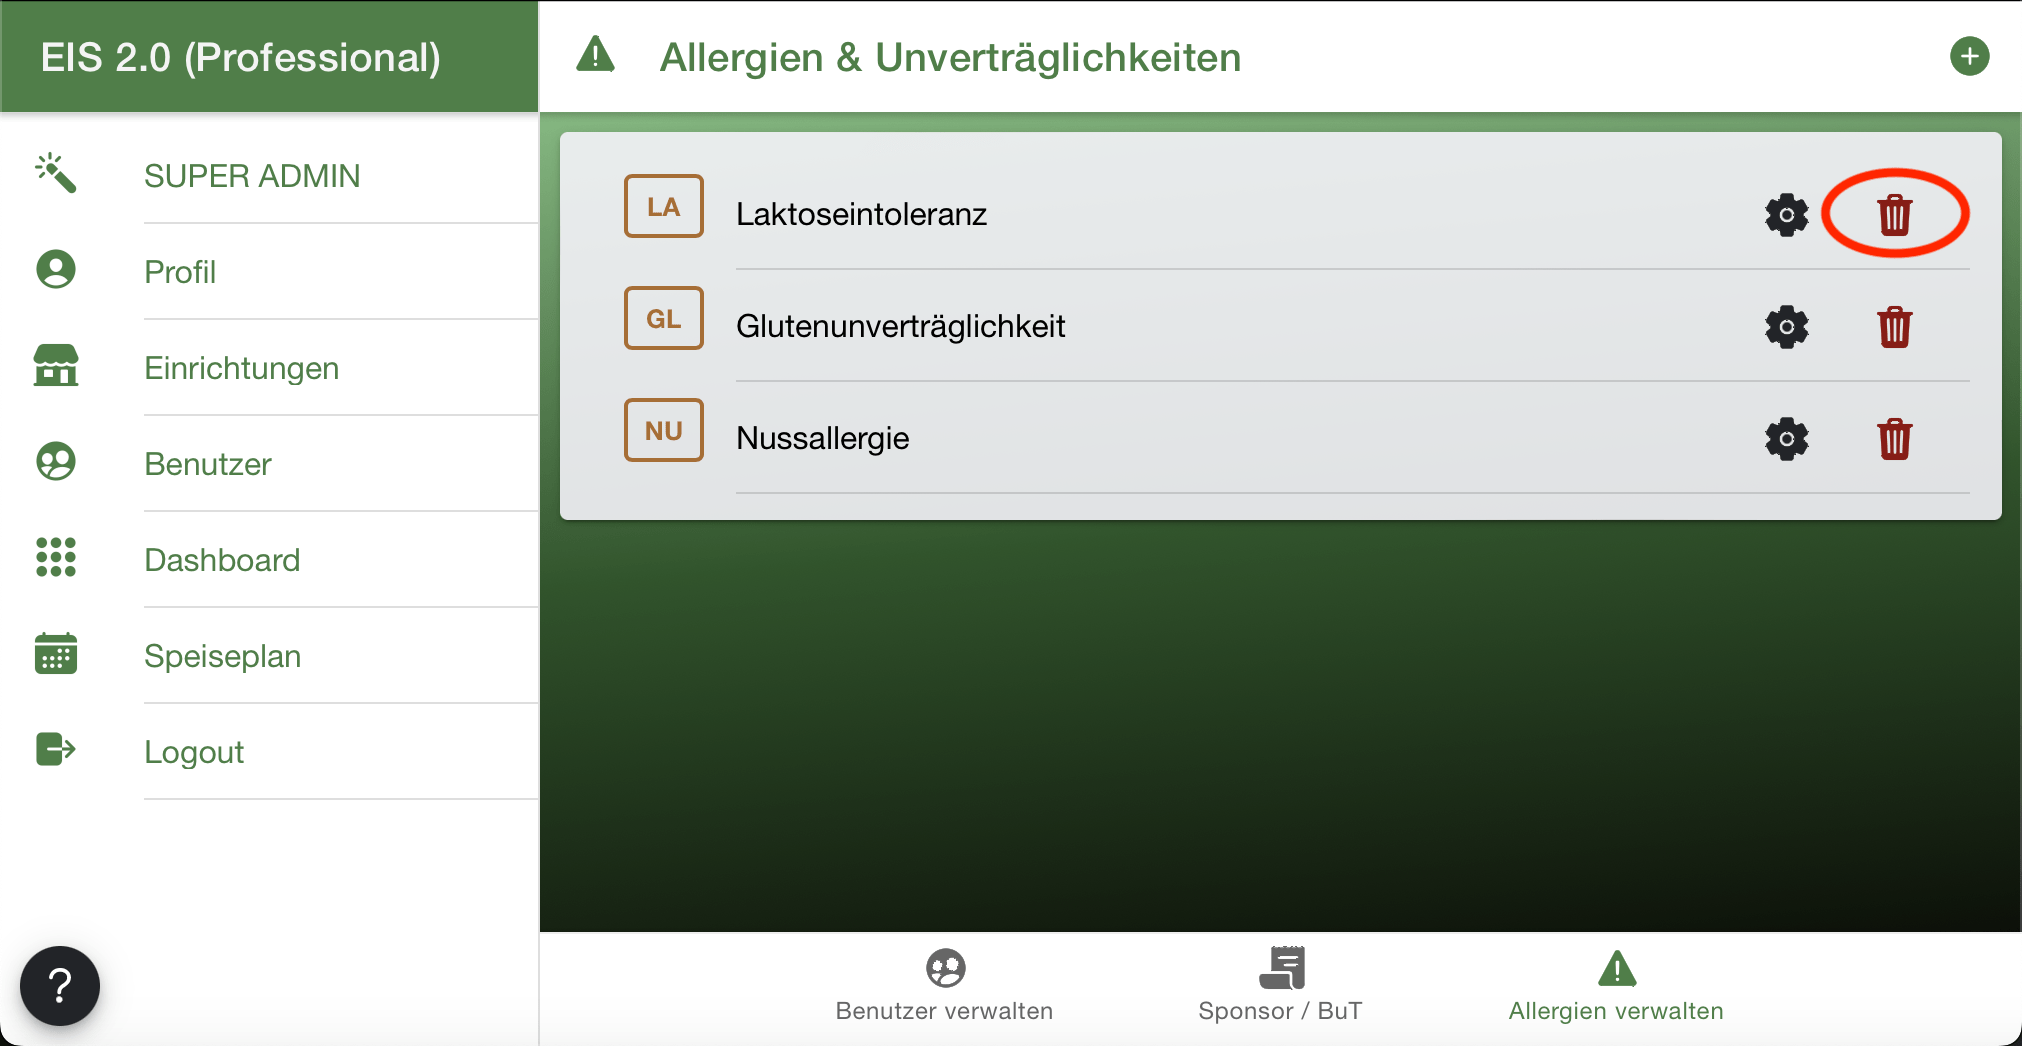 Mülleimer Allergien löschen - EIS 2.0 Bestellsystem